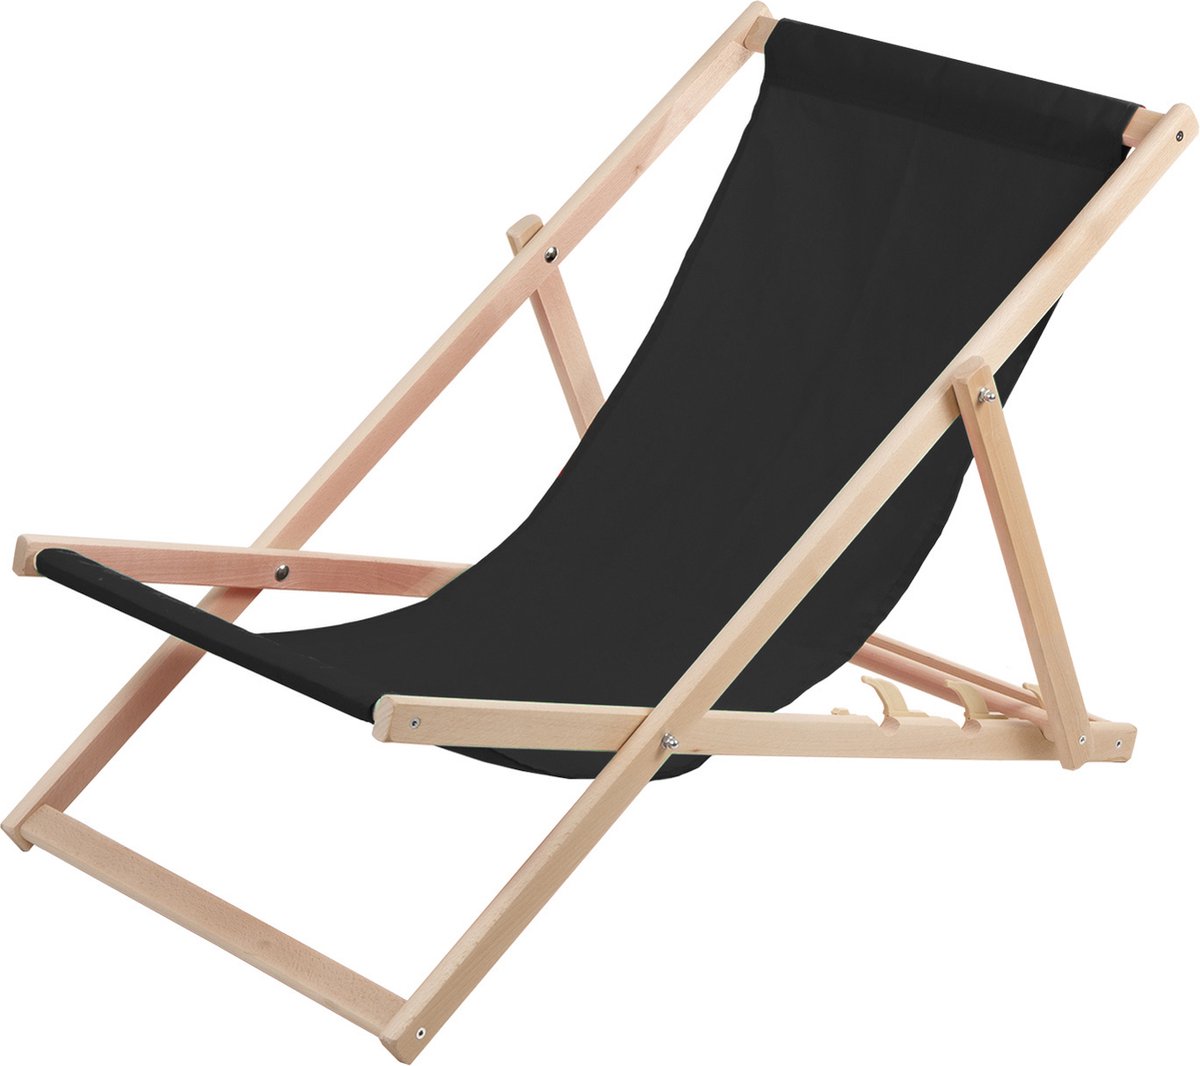 WOODOK - Ligstoel - Comfortabele houten ligstoel in zwart ideaal voor het strand, balkon, terras